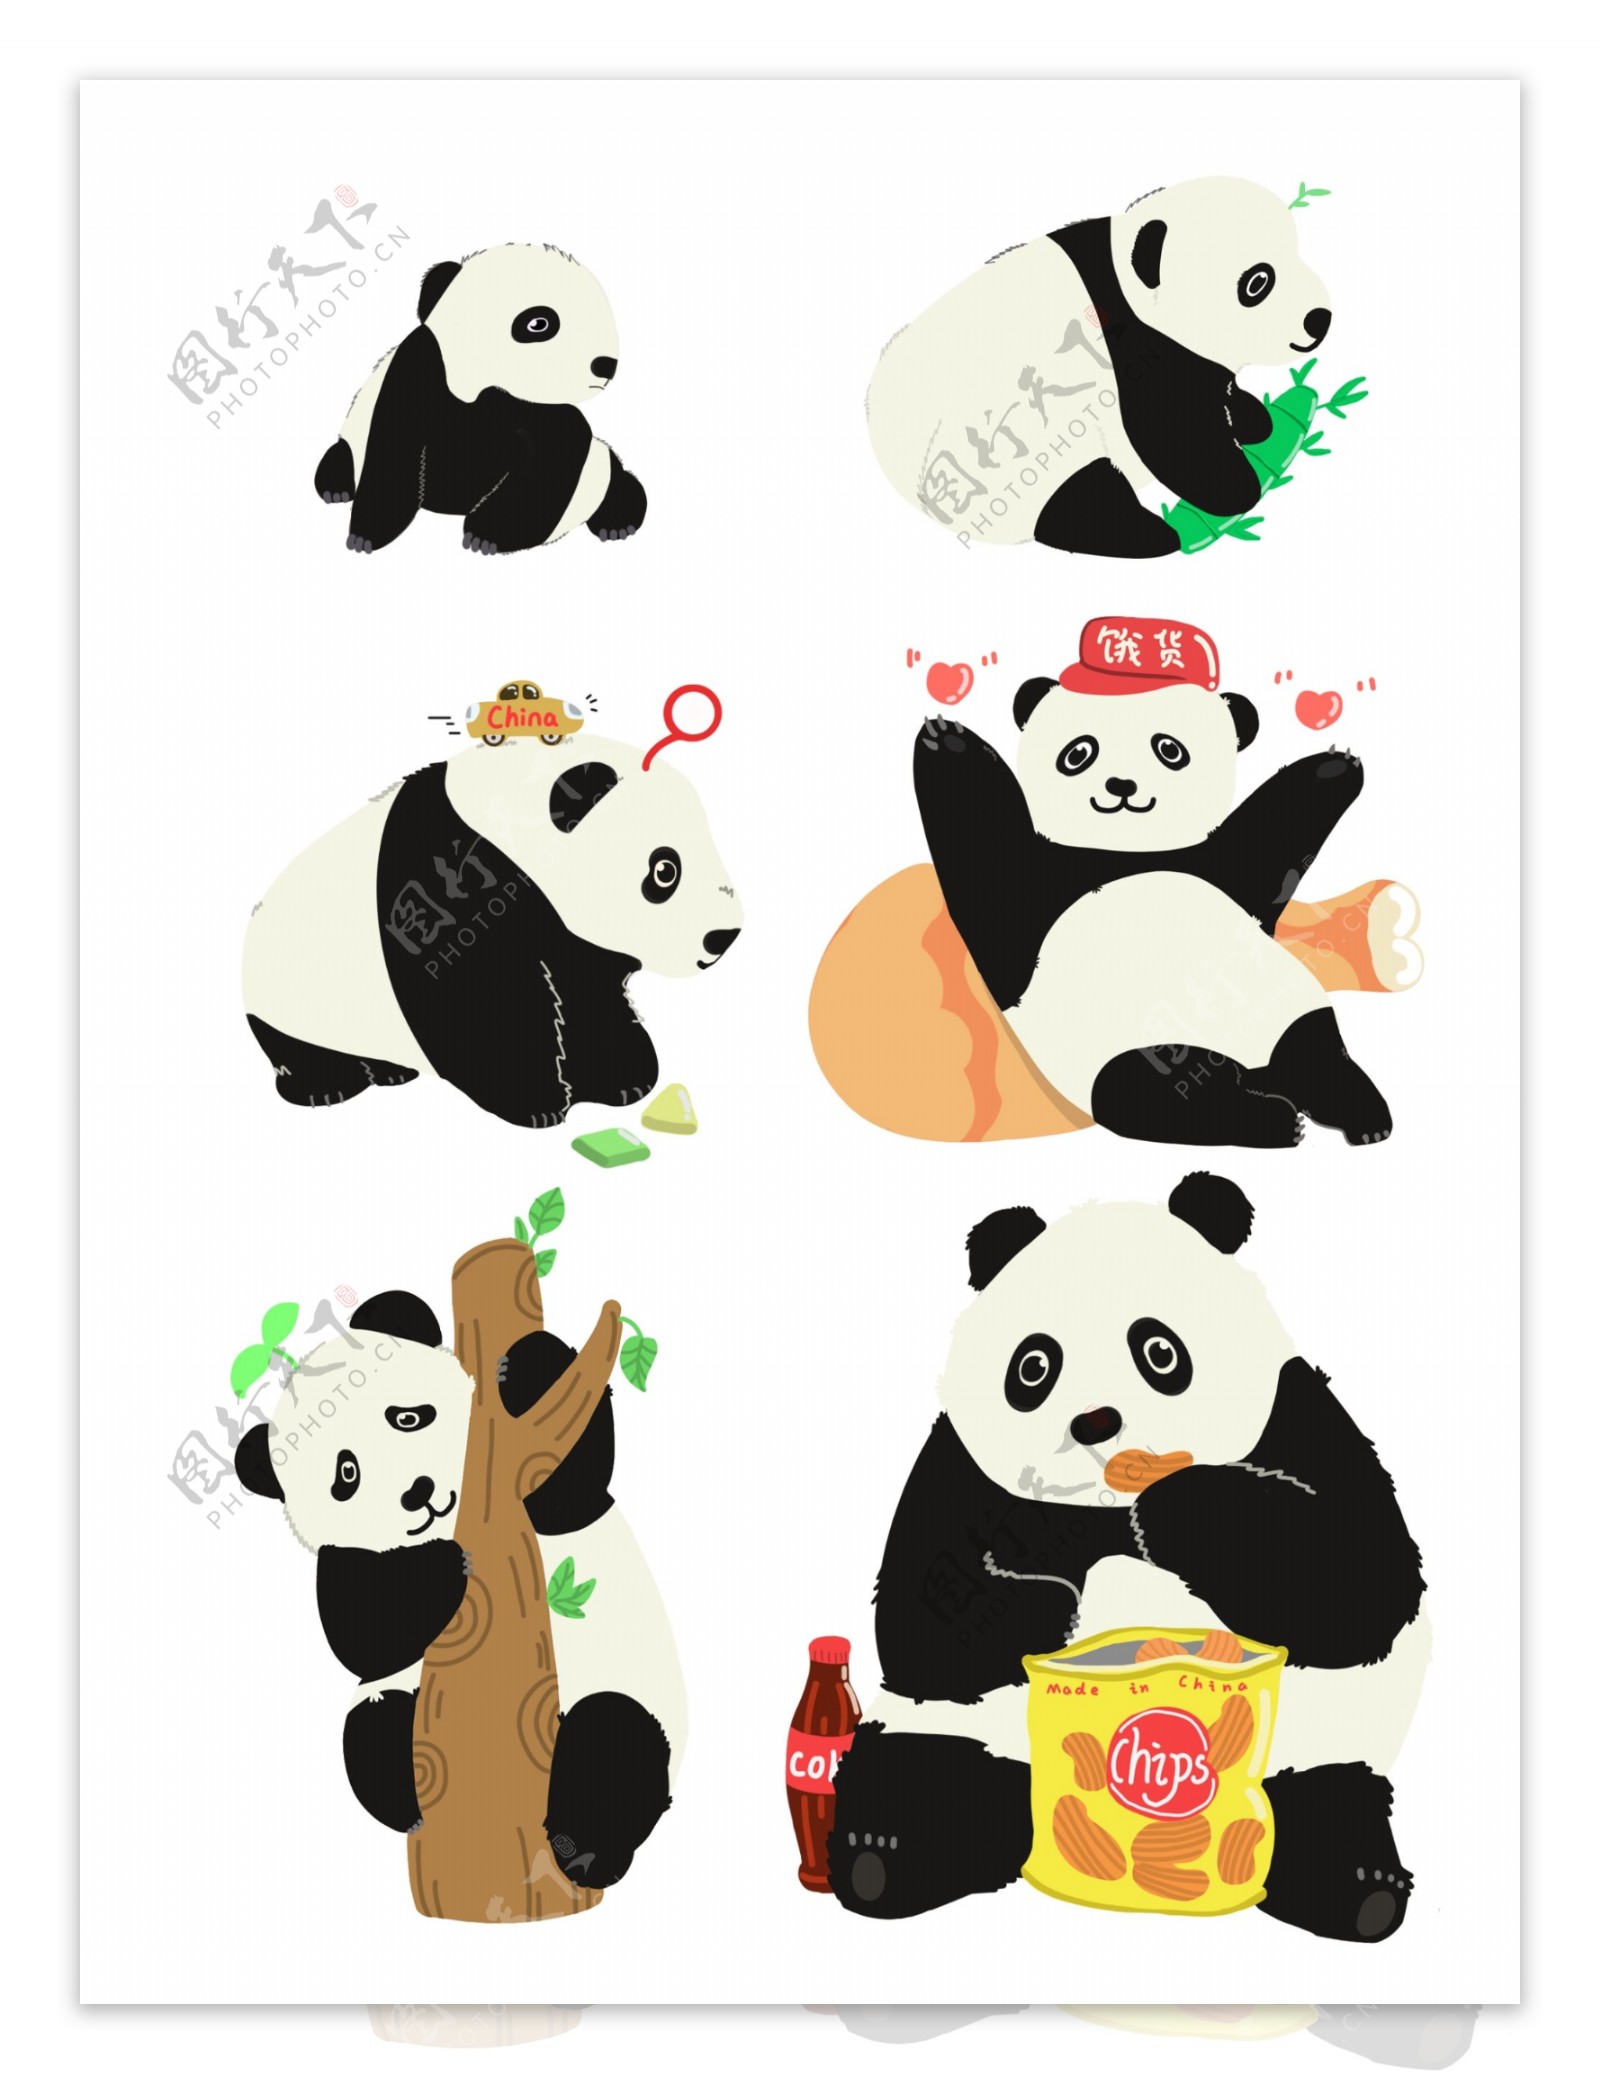 原创可爱动物生长成长熊猫国宝插画素材